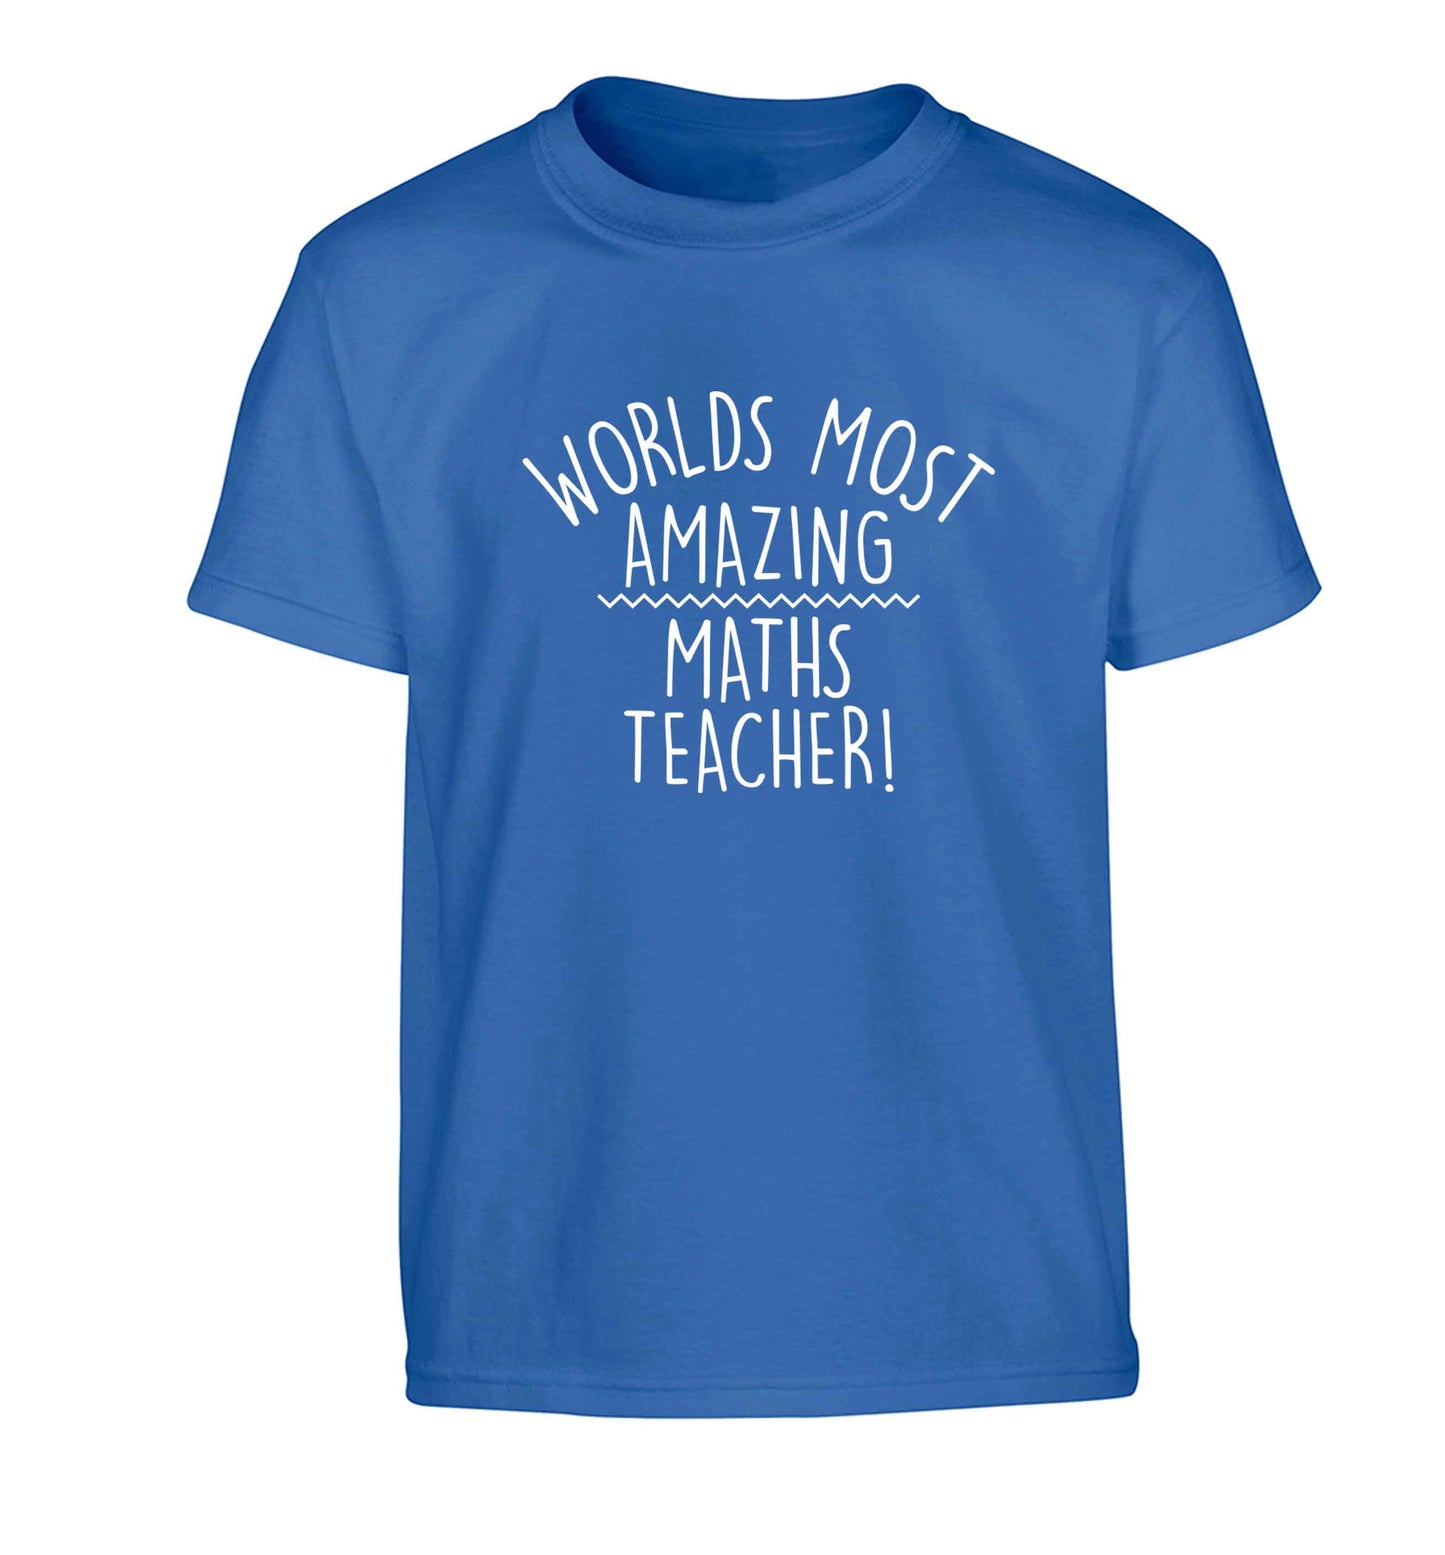 Worlds most amazing maths teacher Children's blue Tshirt 12-13 Years